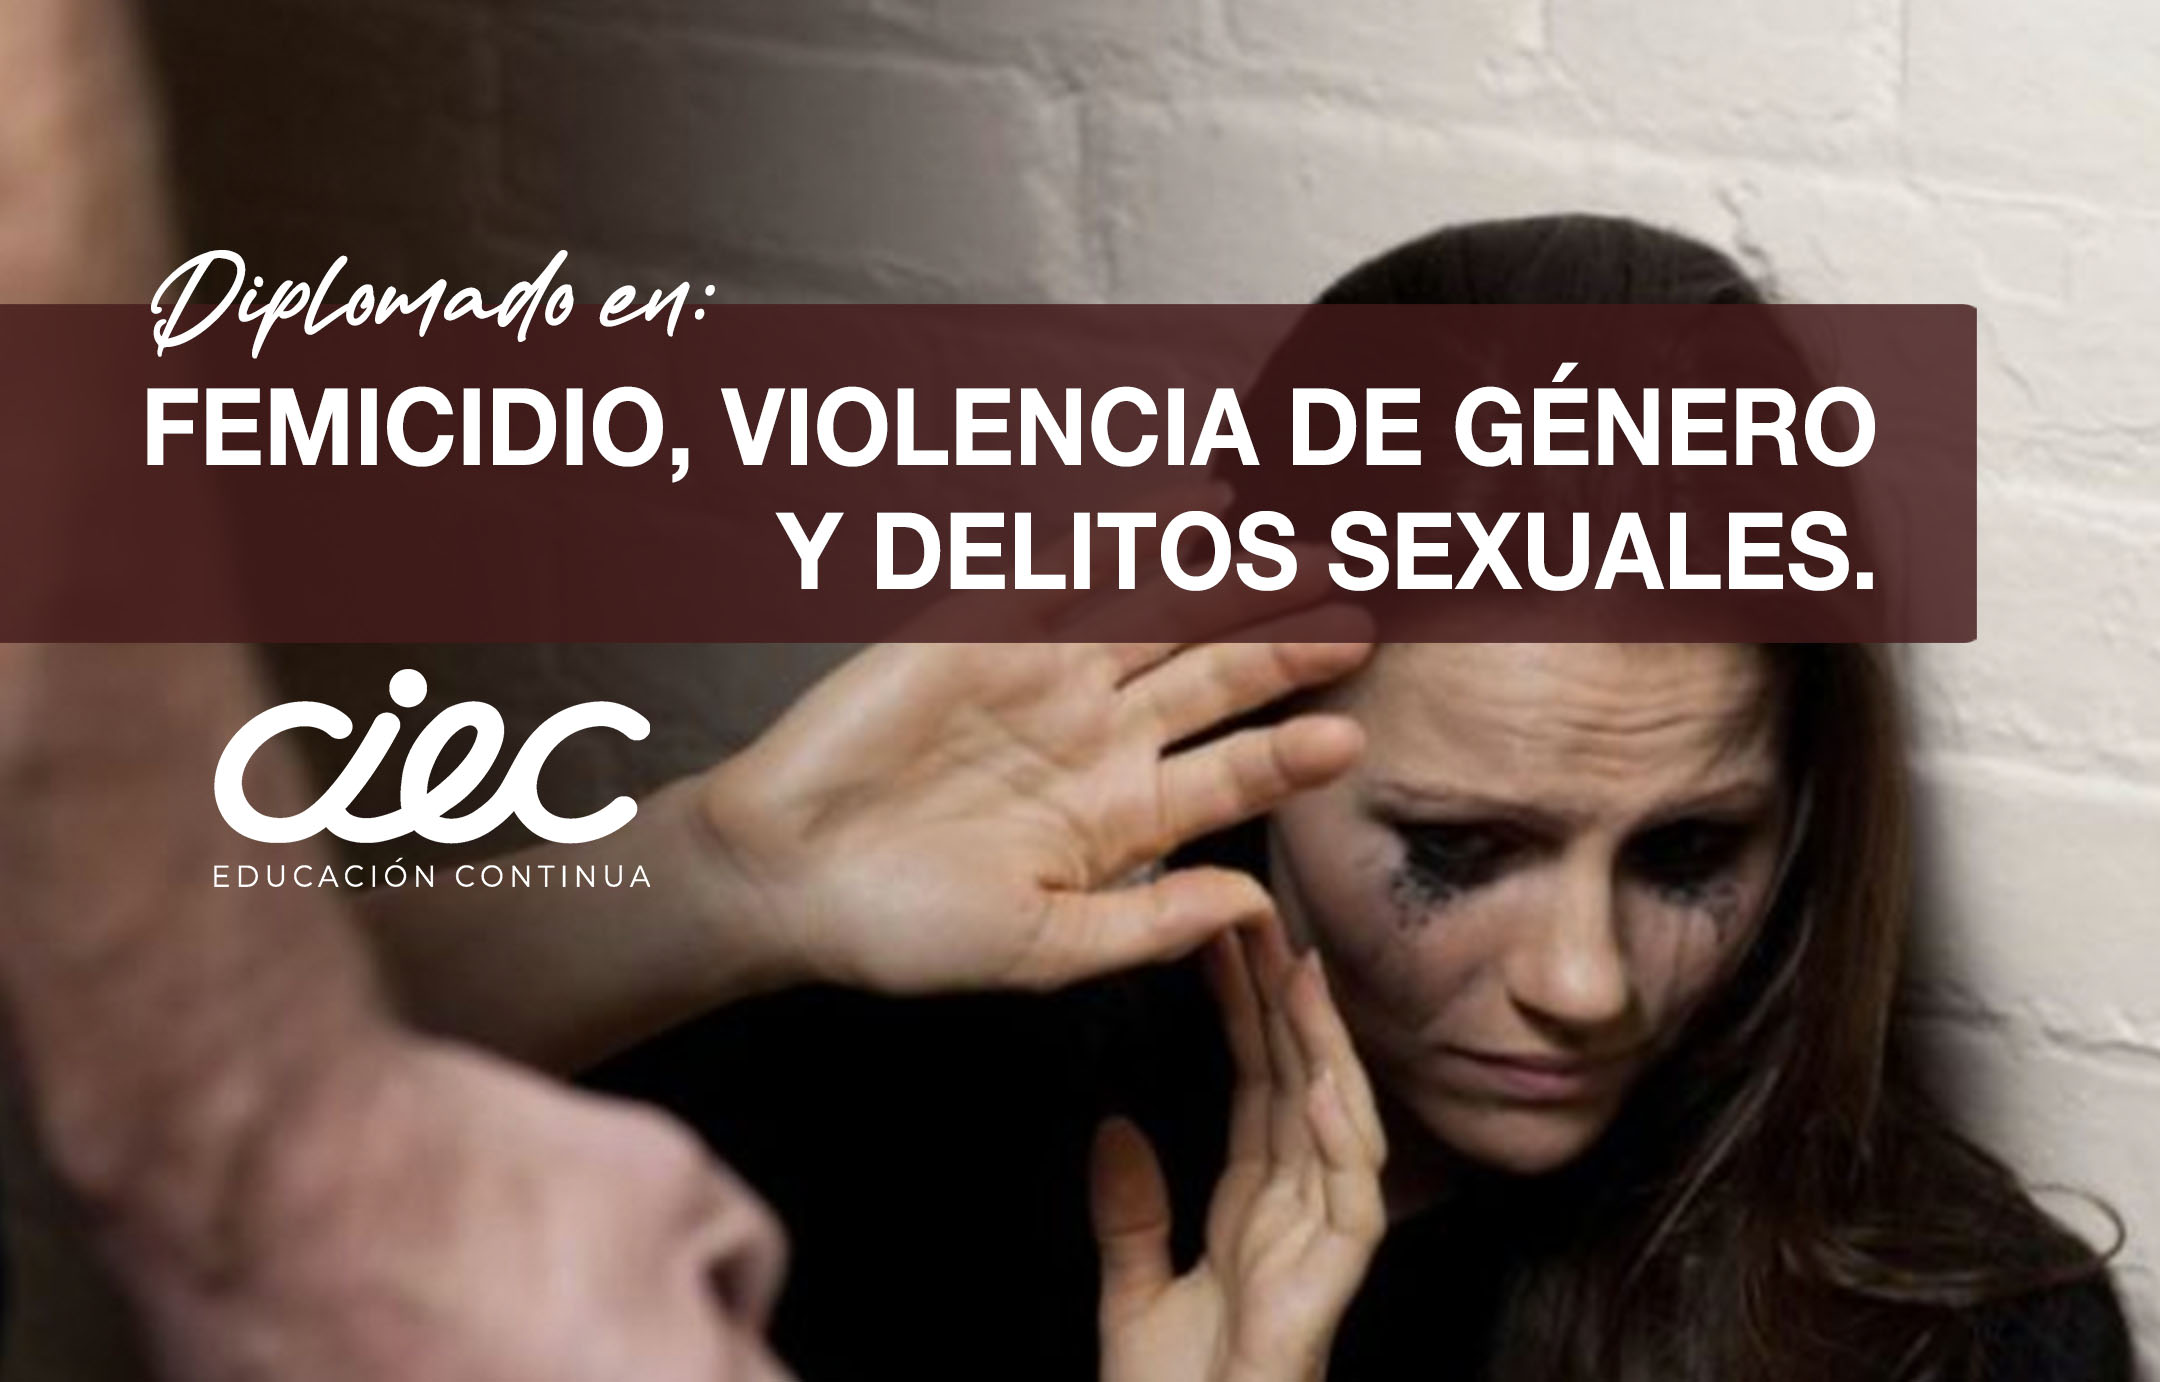 DIPLOMADO EN FEMICIDIO VIOLENCIA DE GENERO Y DELITOS SEXUALES